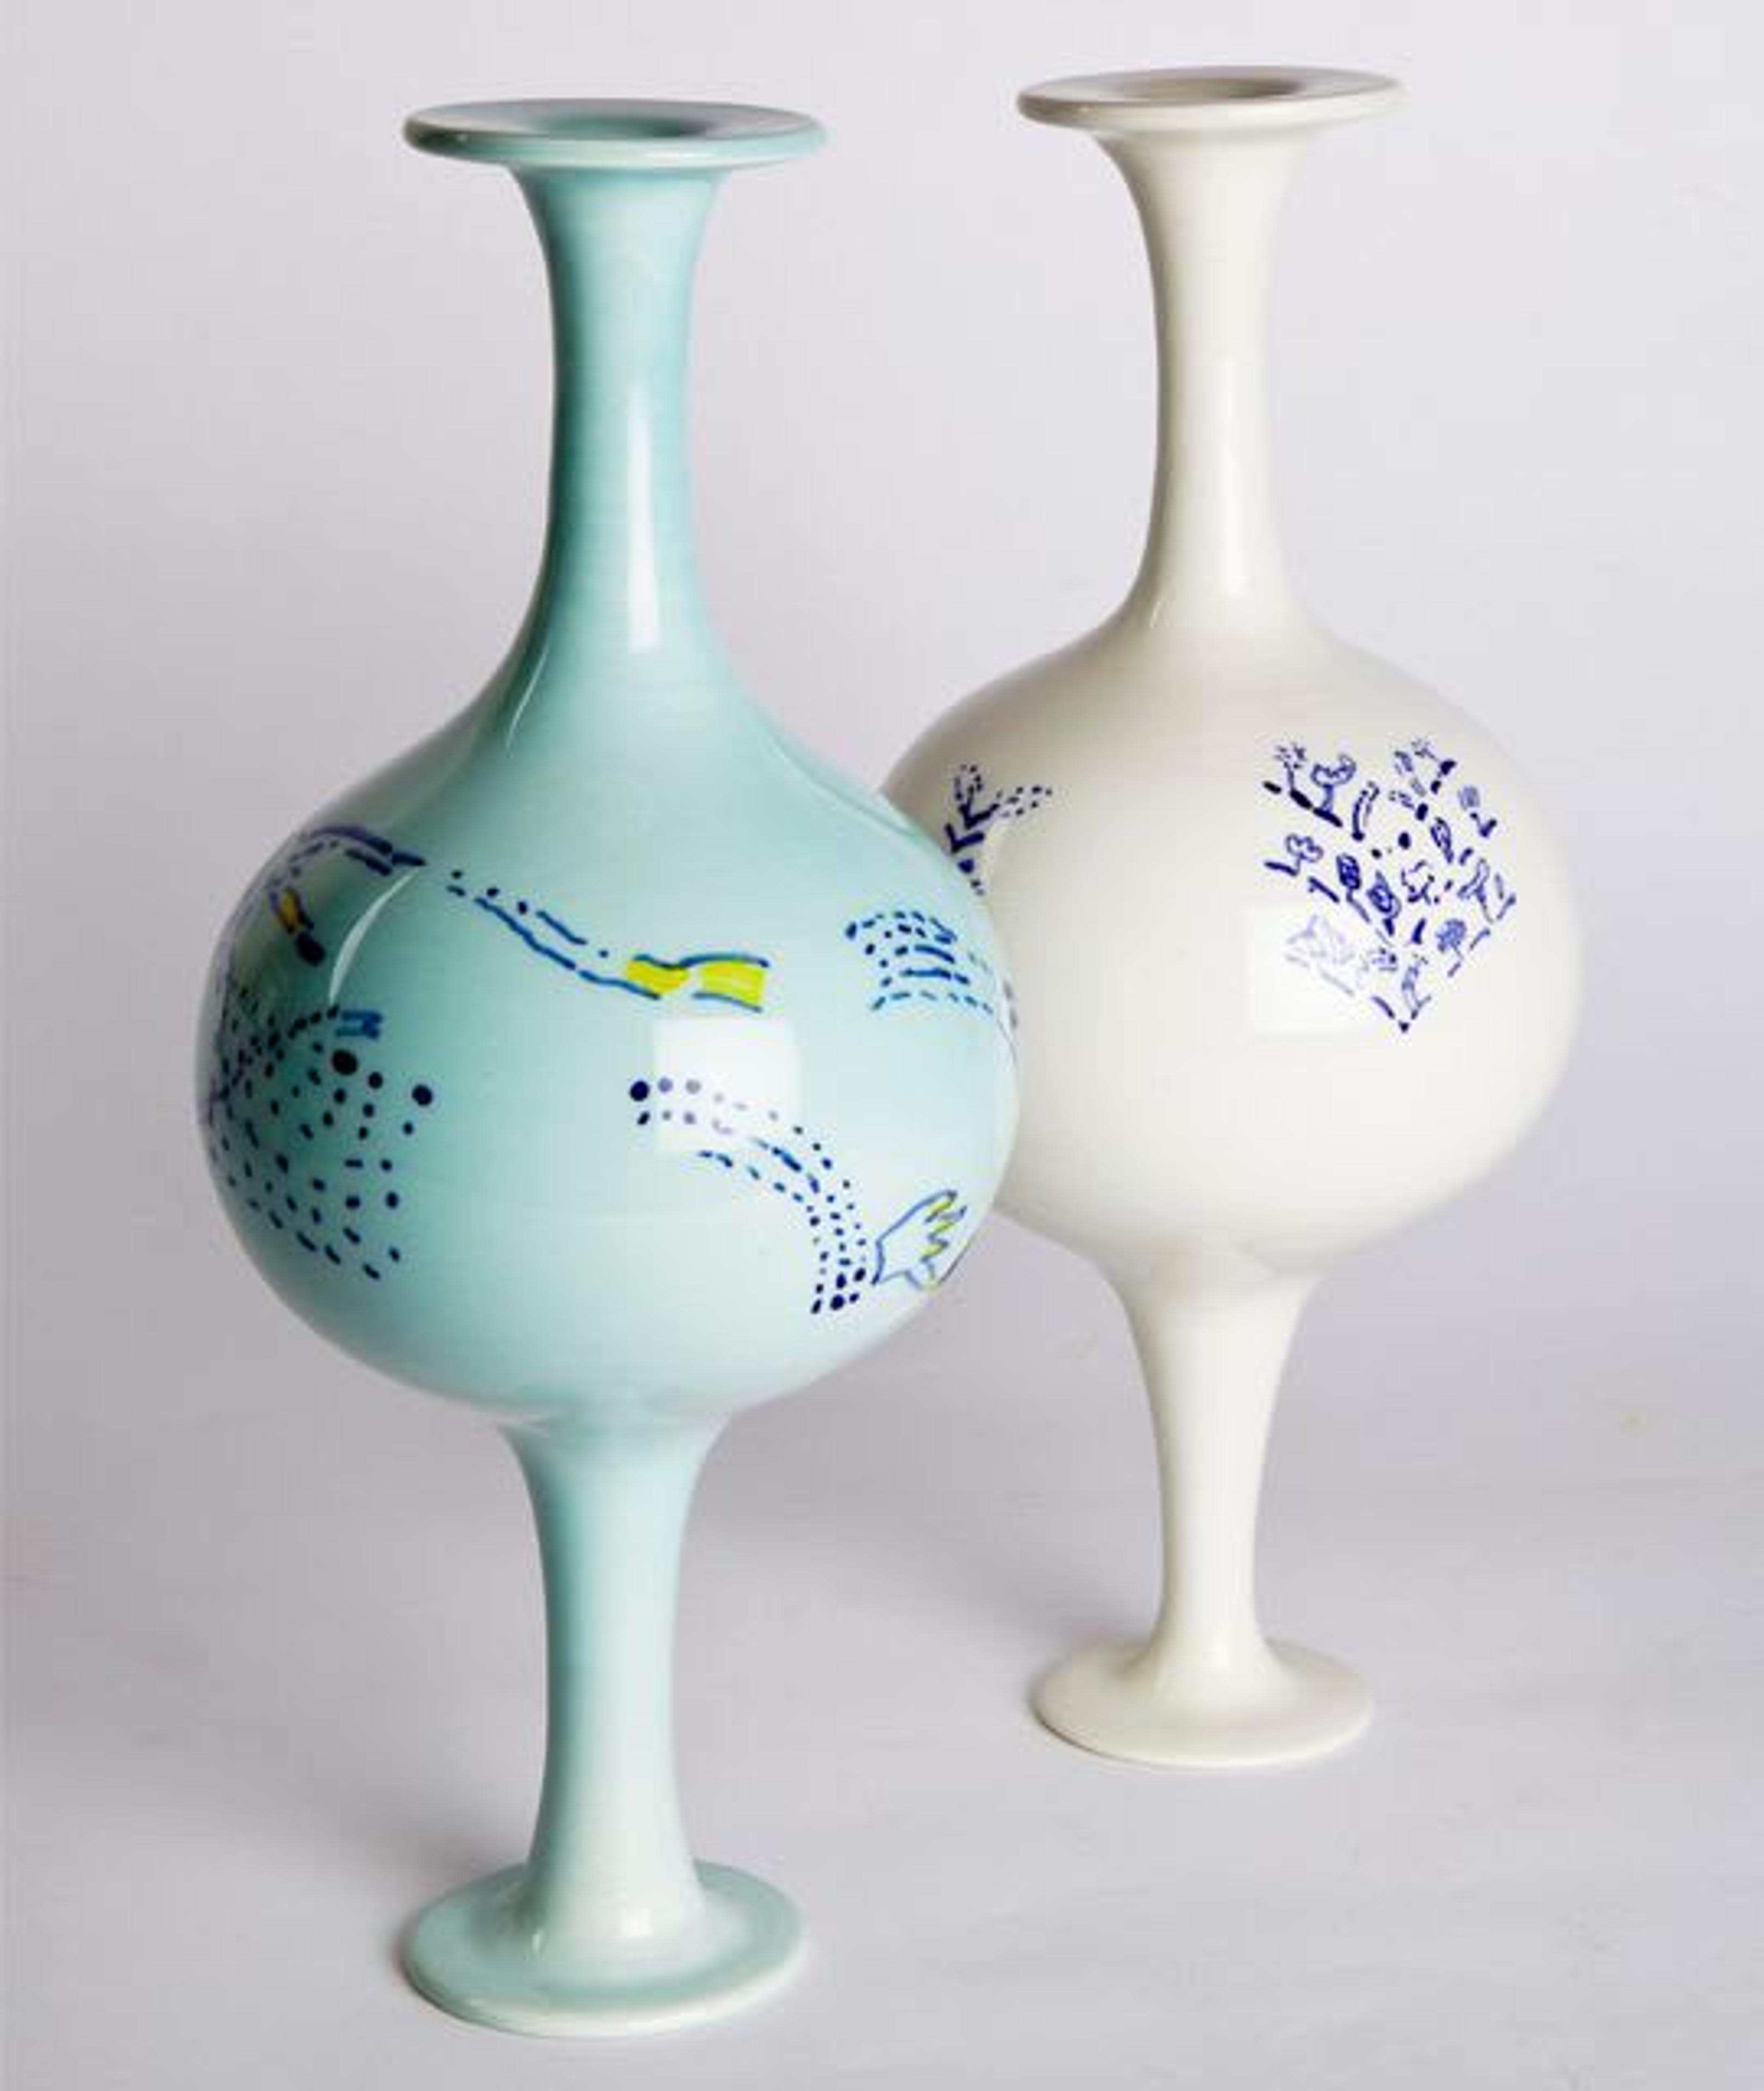 Ceramic vases designed by Ugo La Pietra